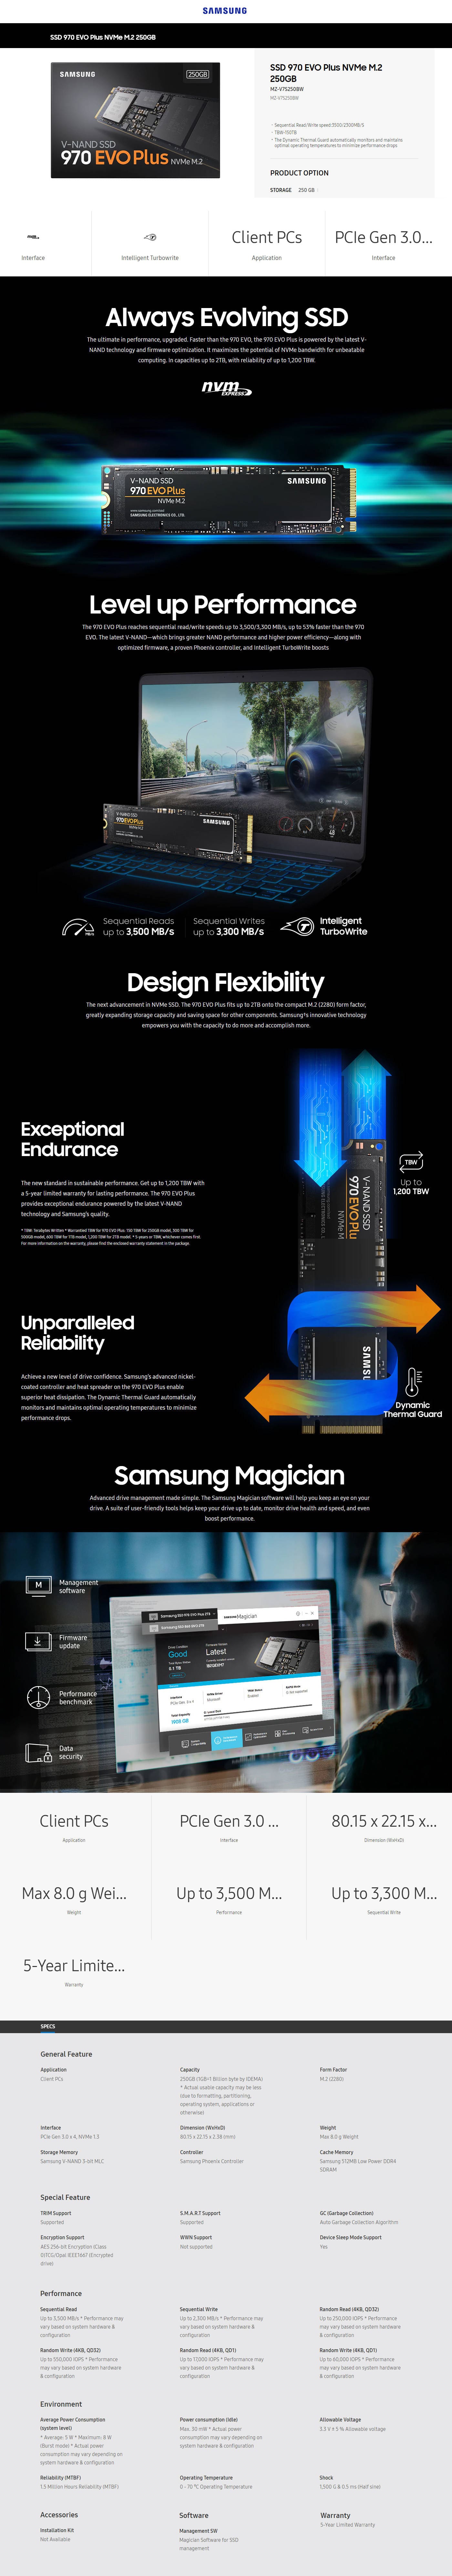 Samsung 970 EVO Plus MZ-V7S250BW - SSD - 250 Go - PCIe 3.0 x4